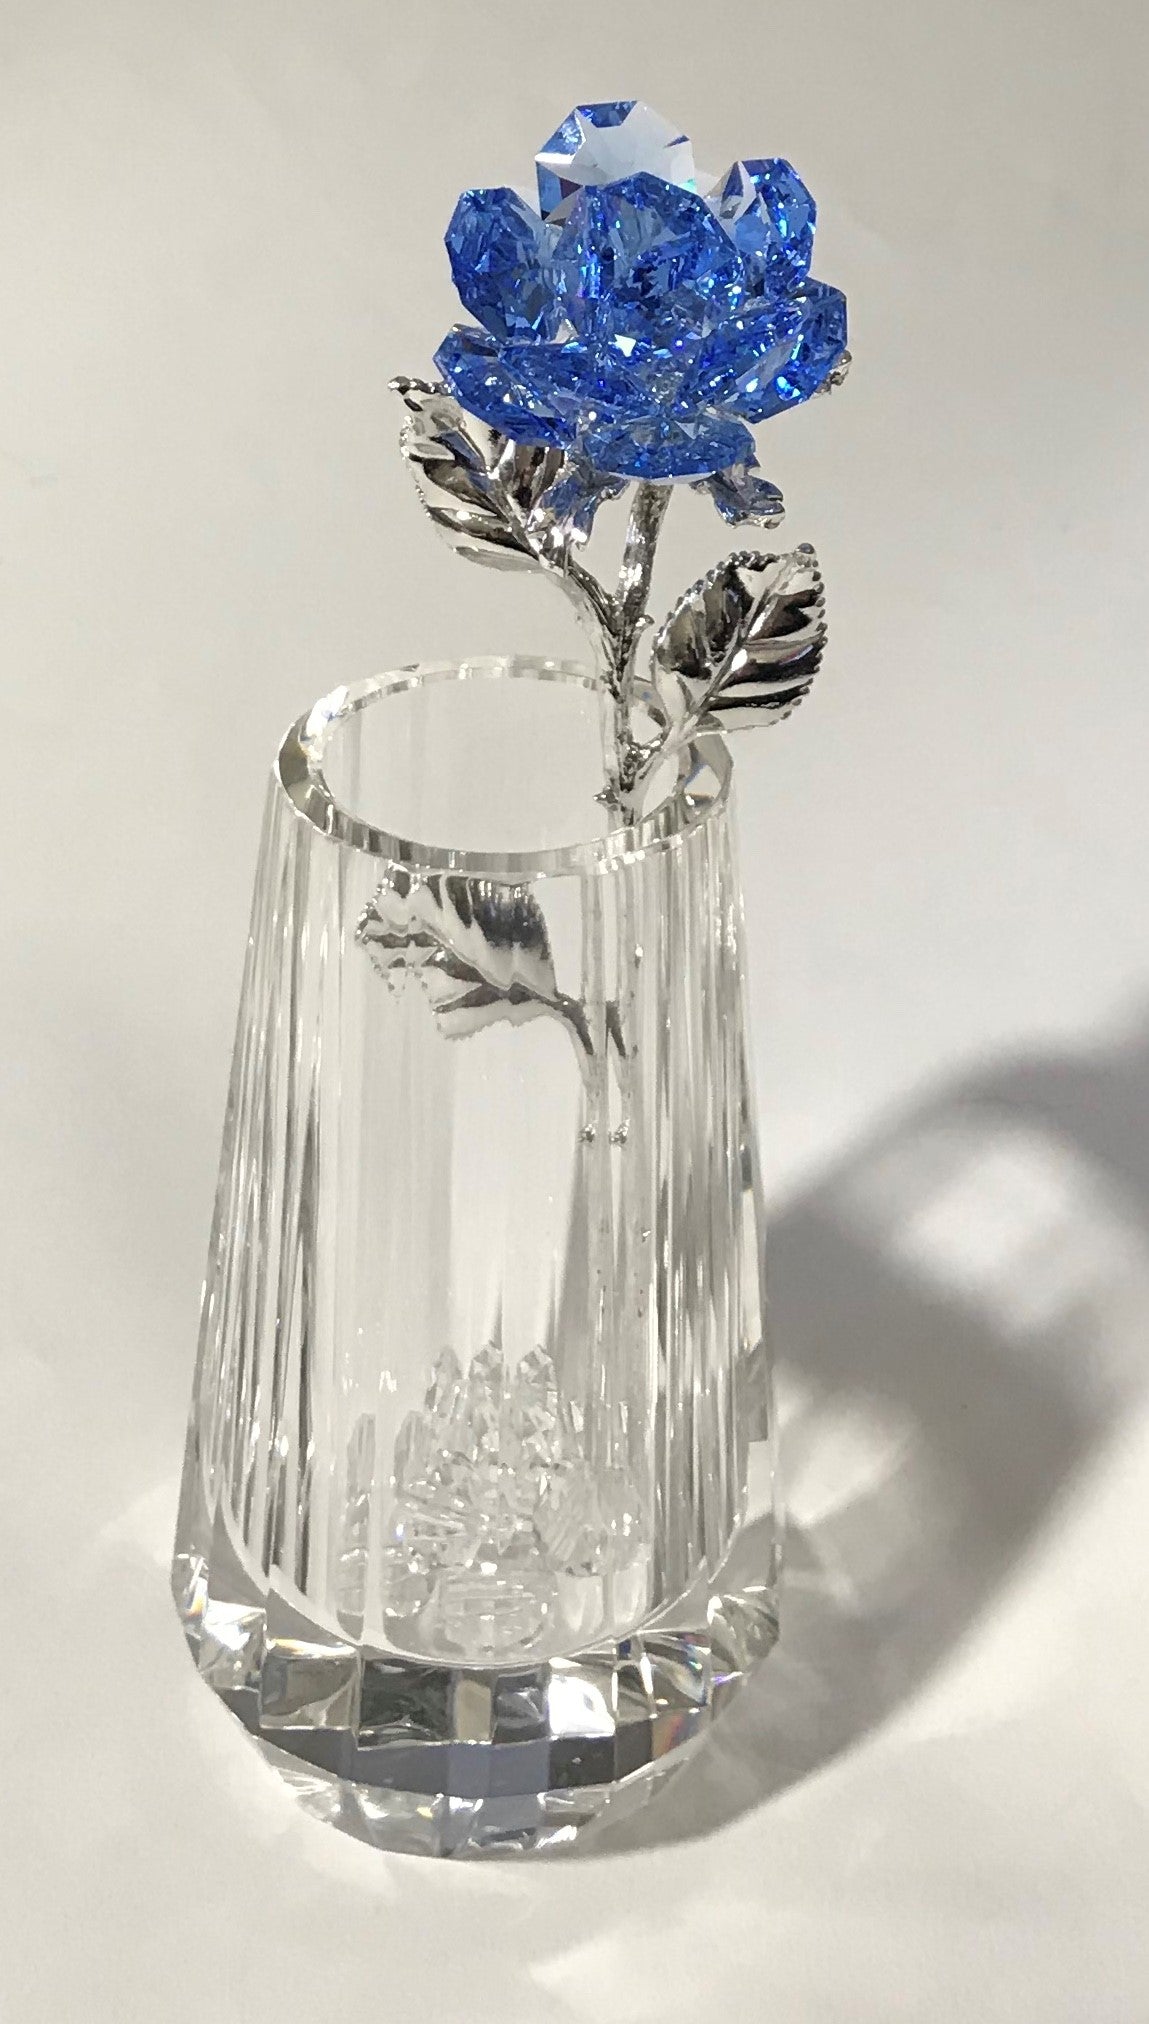 Blue Crystal Rose In Crystal Vase - Blue Crystal Flower In Crystal Vase - Rose Figurine